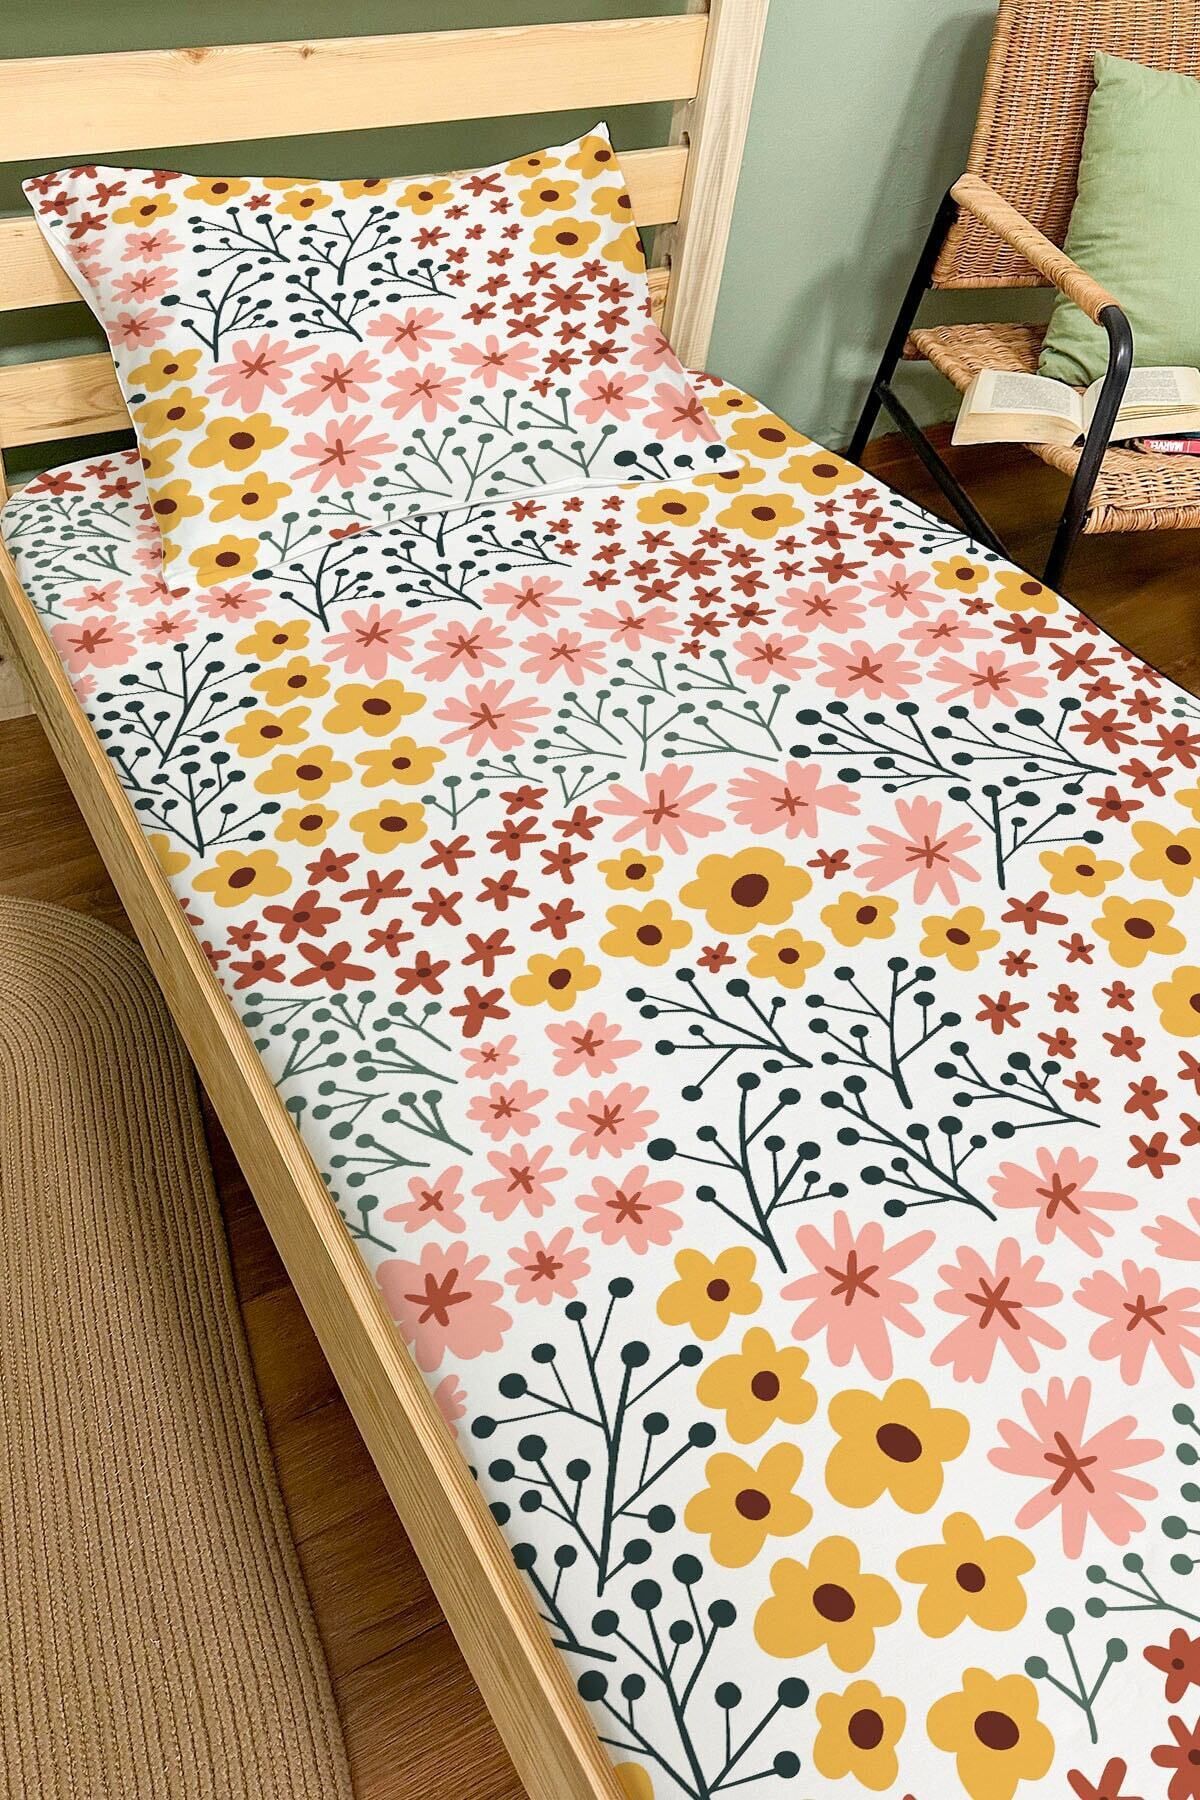 Tuğba Kuğu Lastikli Çarşaf Seti (140X200 YÜKSEKLİK 20) - Iconic Serisi - Bahar Çiçekleri